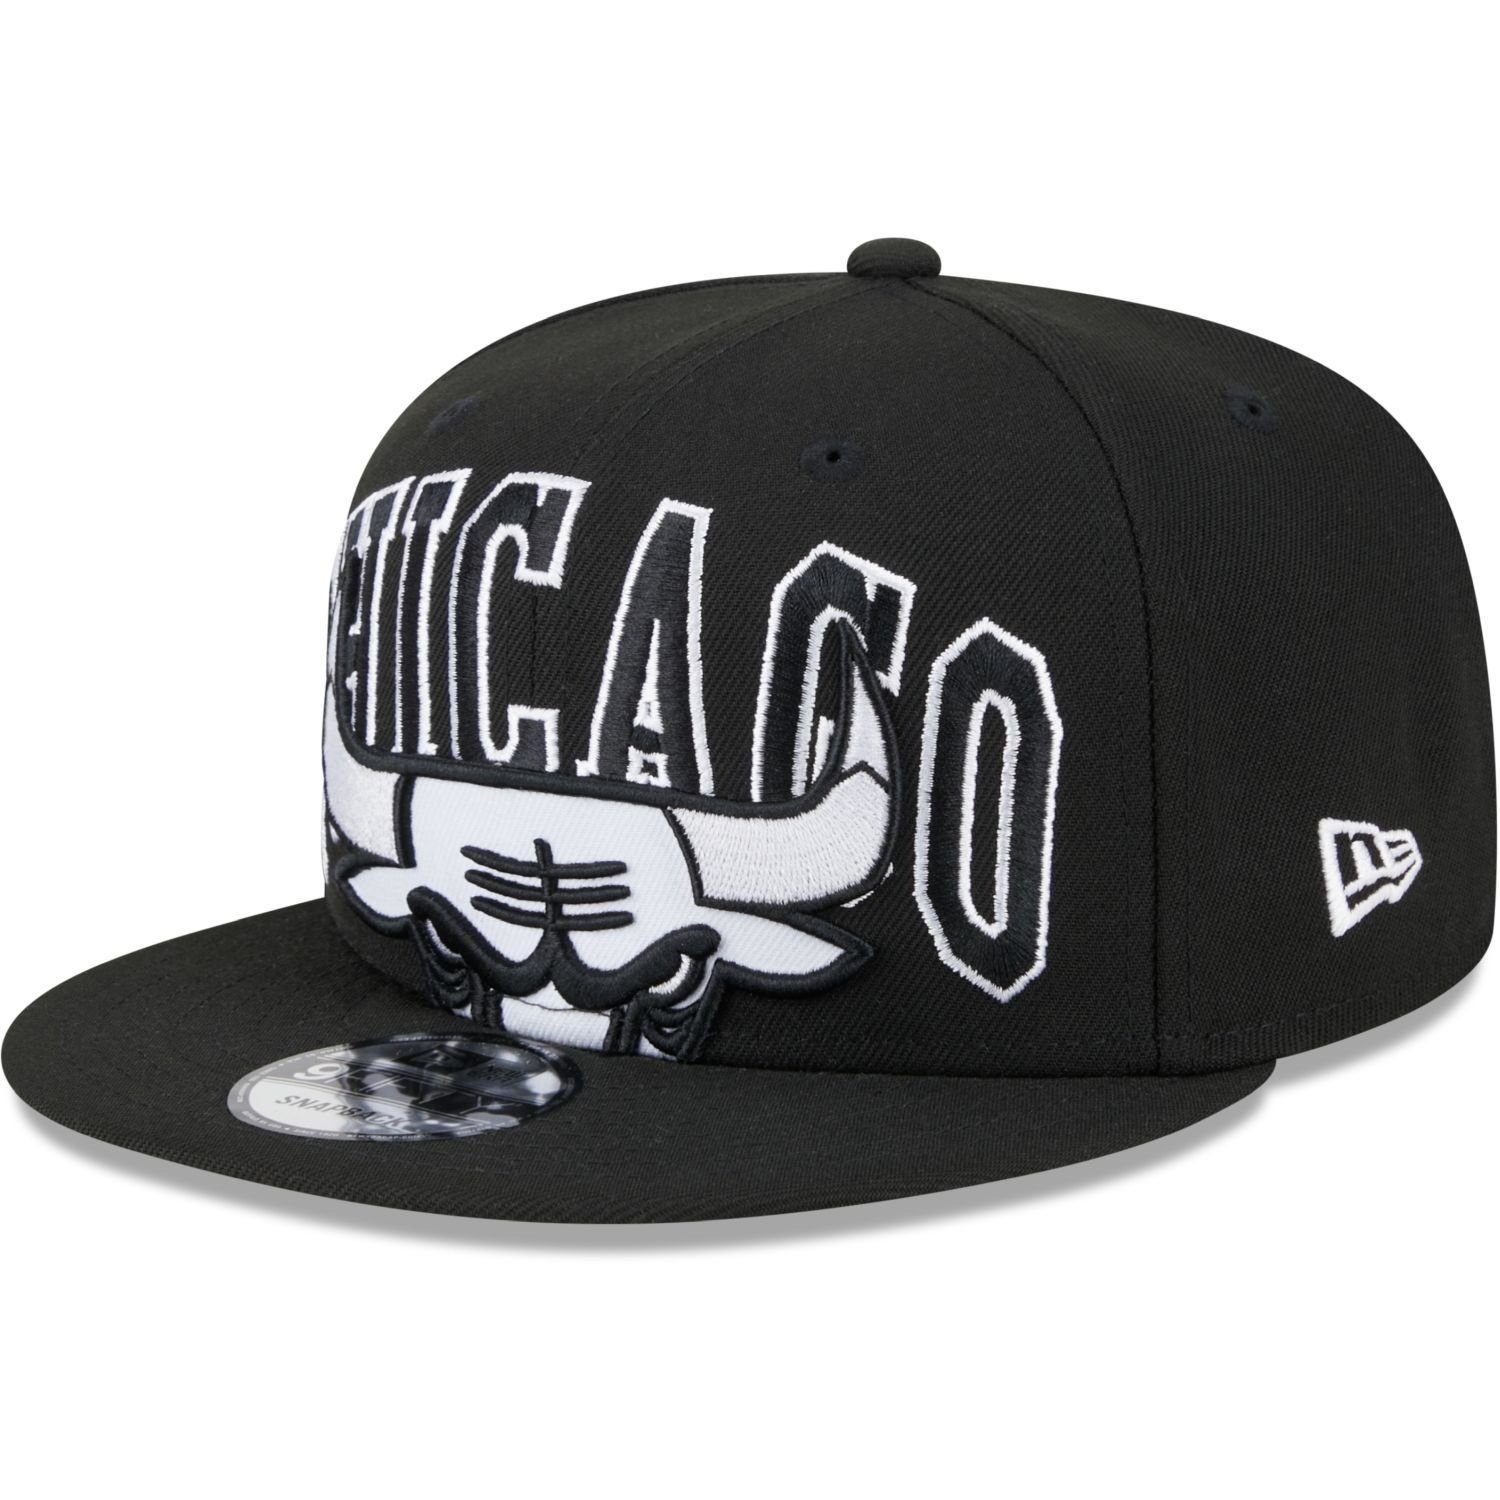 New Era Snapback Cap 9FIFTY NBA TIPOFF Chicago Bulls